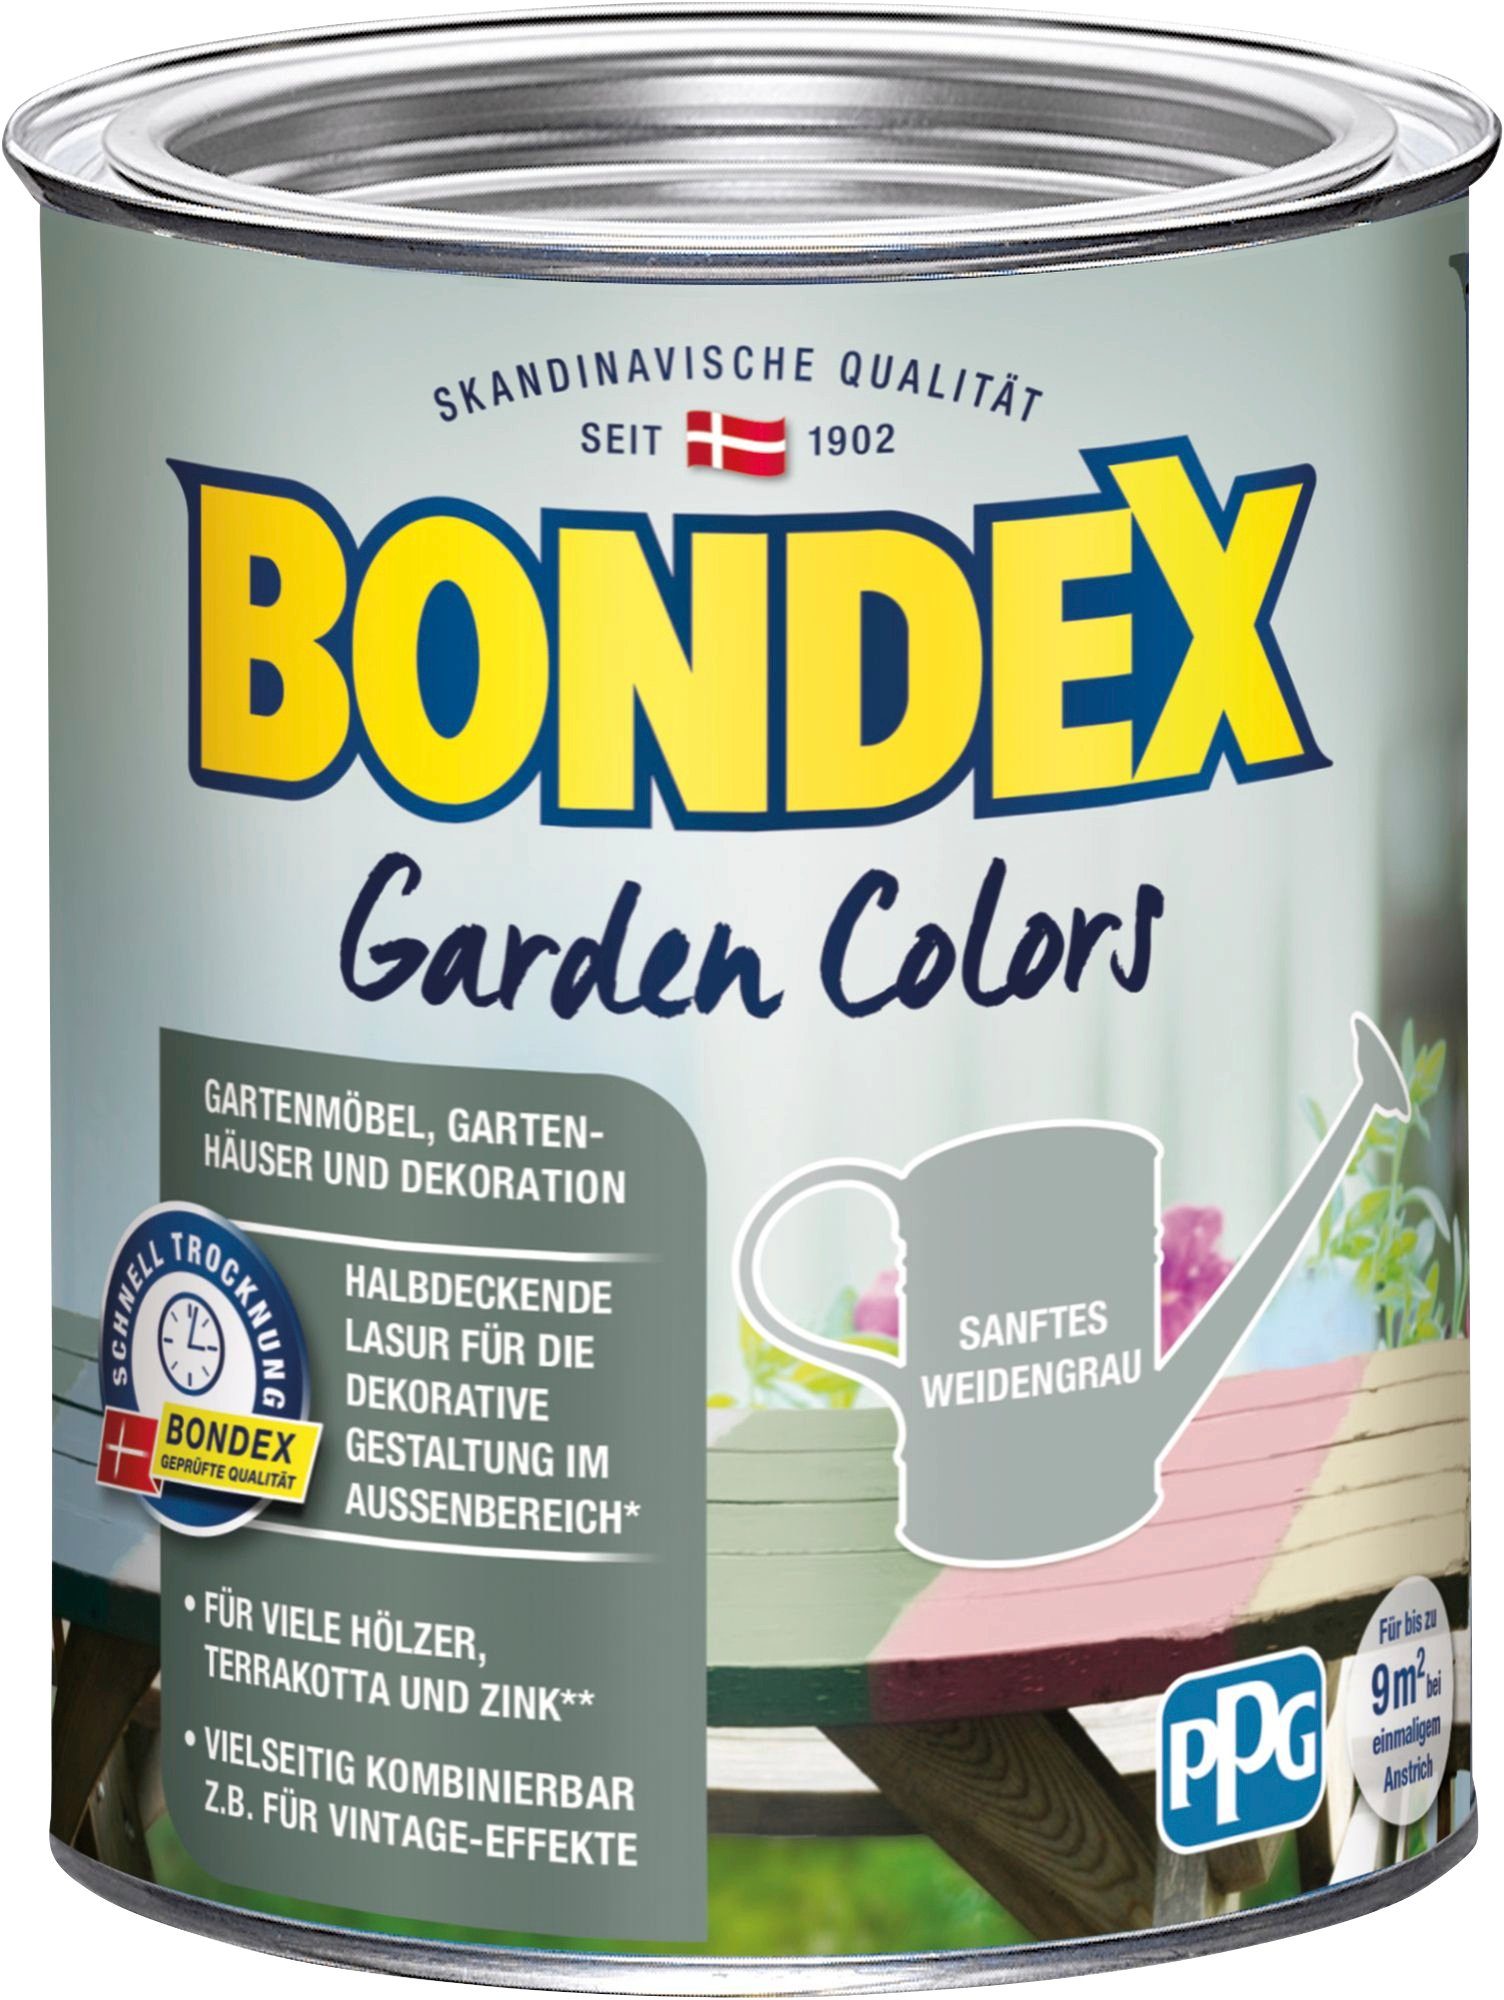 Bondex Wetterschutzfarbe GARDEN COLORS, Behagliches Grün, 0,75 Liter Inhalt Sanftes Weidengrau